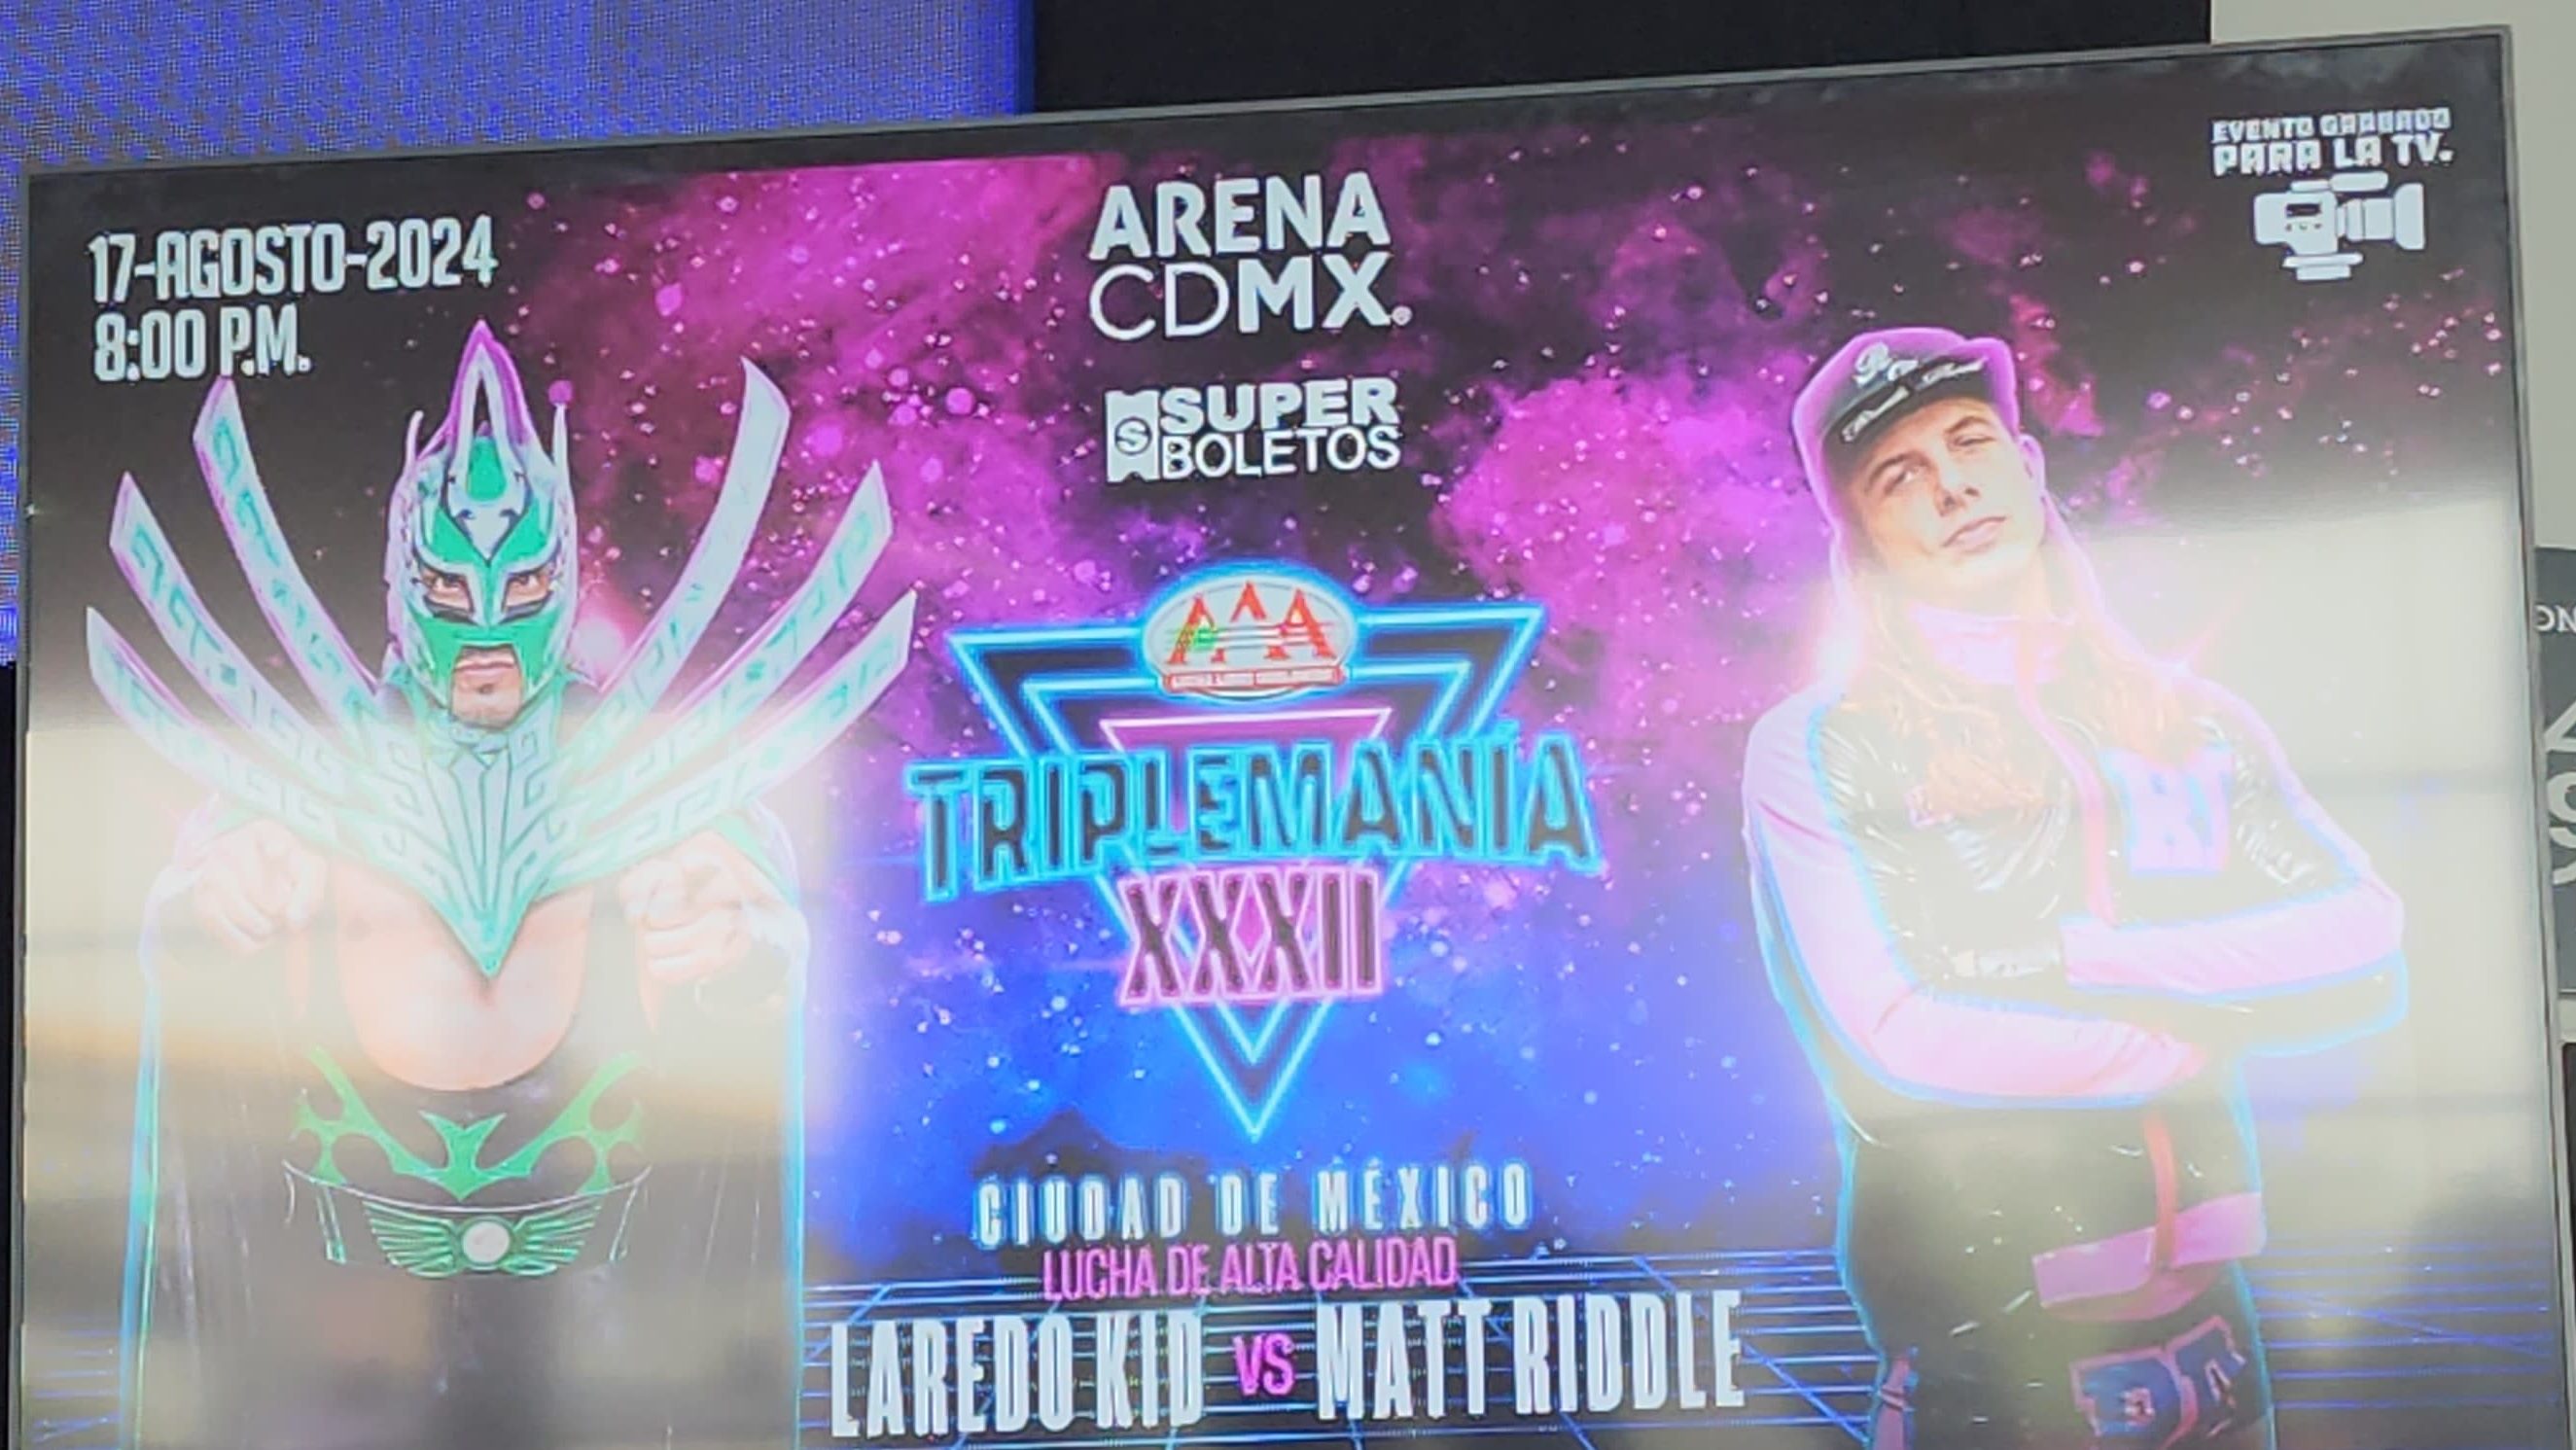 TRIPLEMANIA XXXII cierra su gira en la Arena CDMX el 17 de Agosto 6